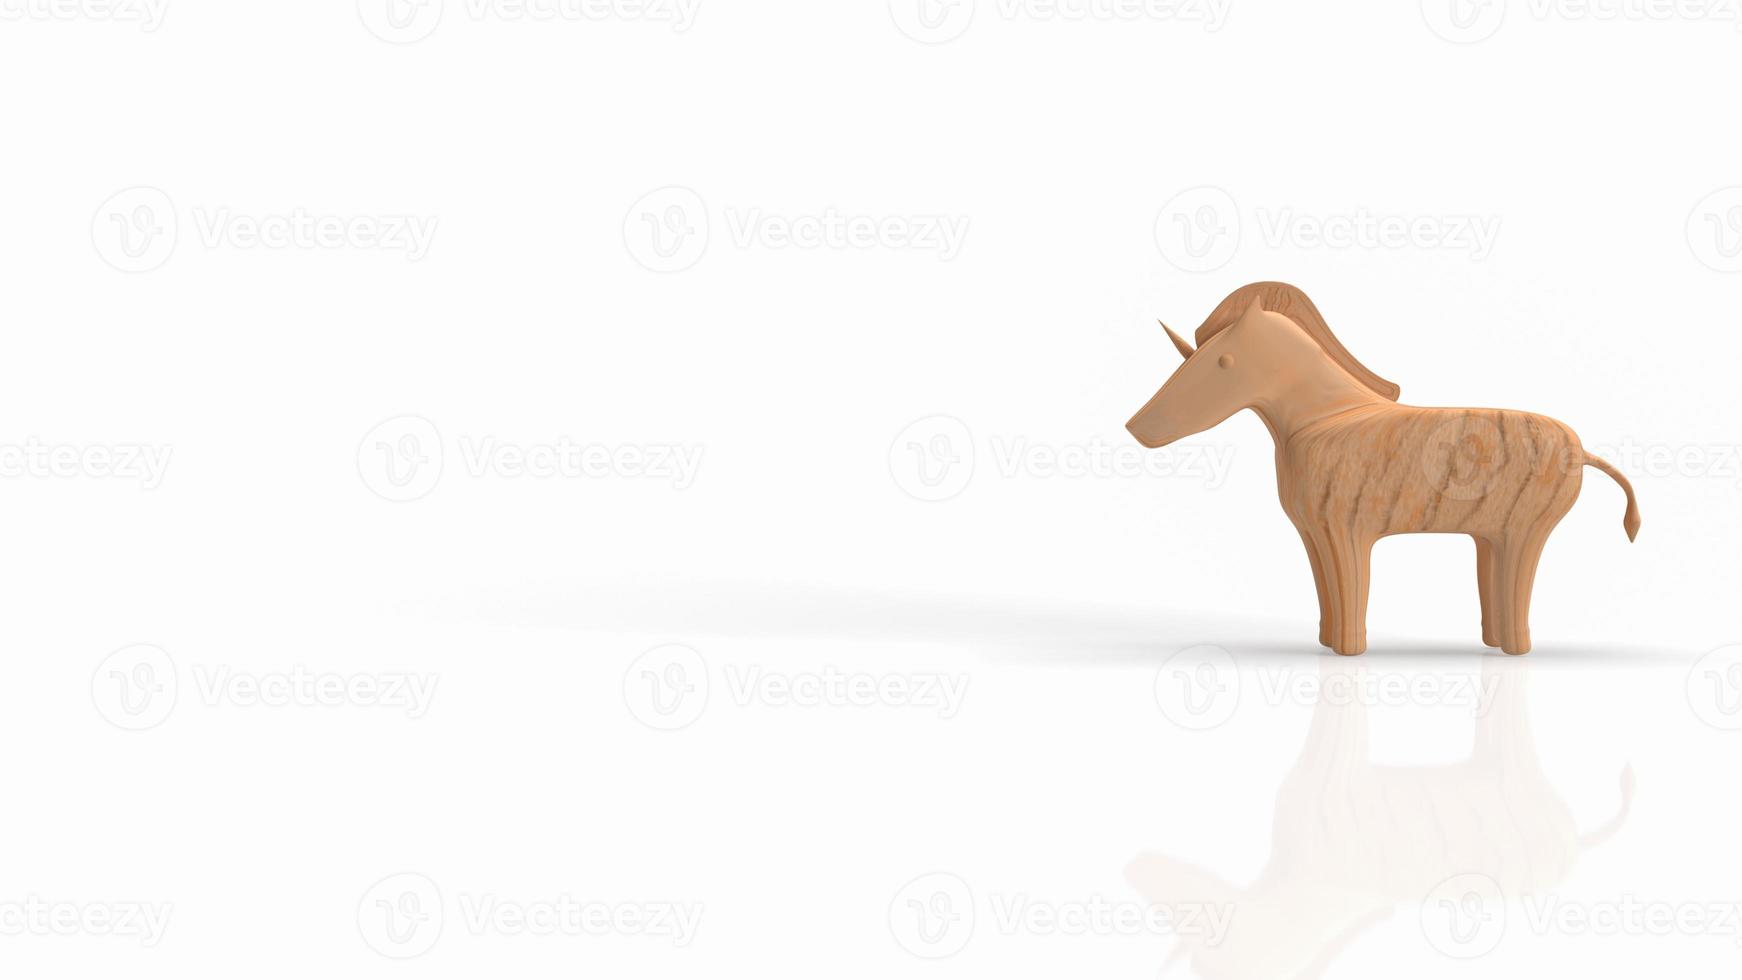 il legno di unicorno su sfondo bianco per il rendering 3d del concetto di business foto